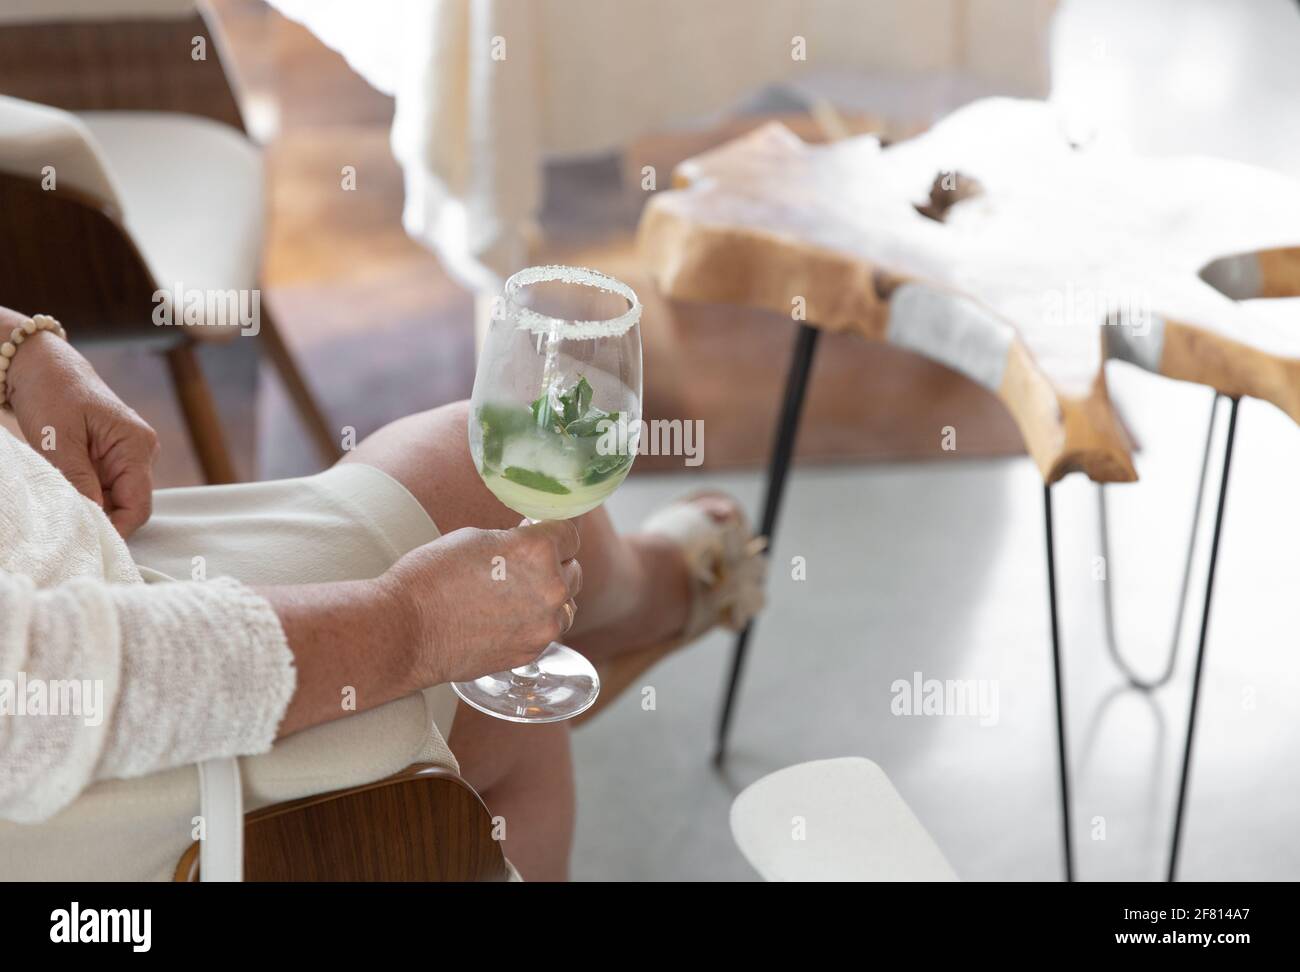 femme assise et tenant une boisson dans un verre Banque D'Images